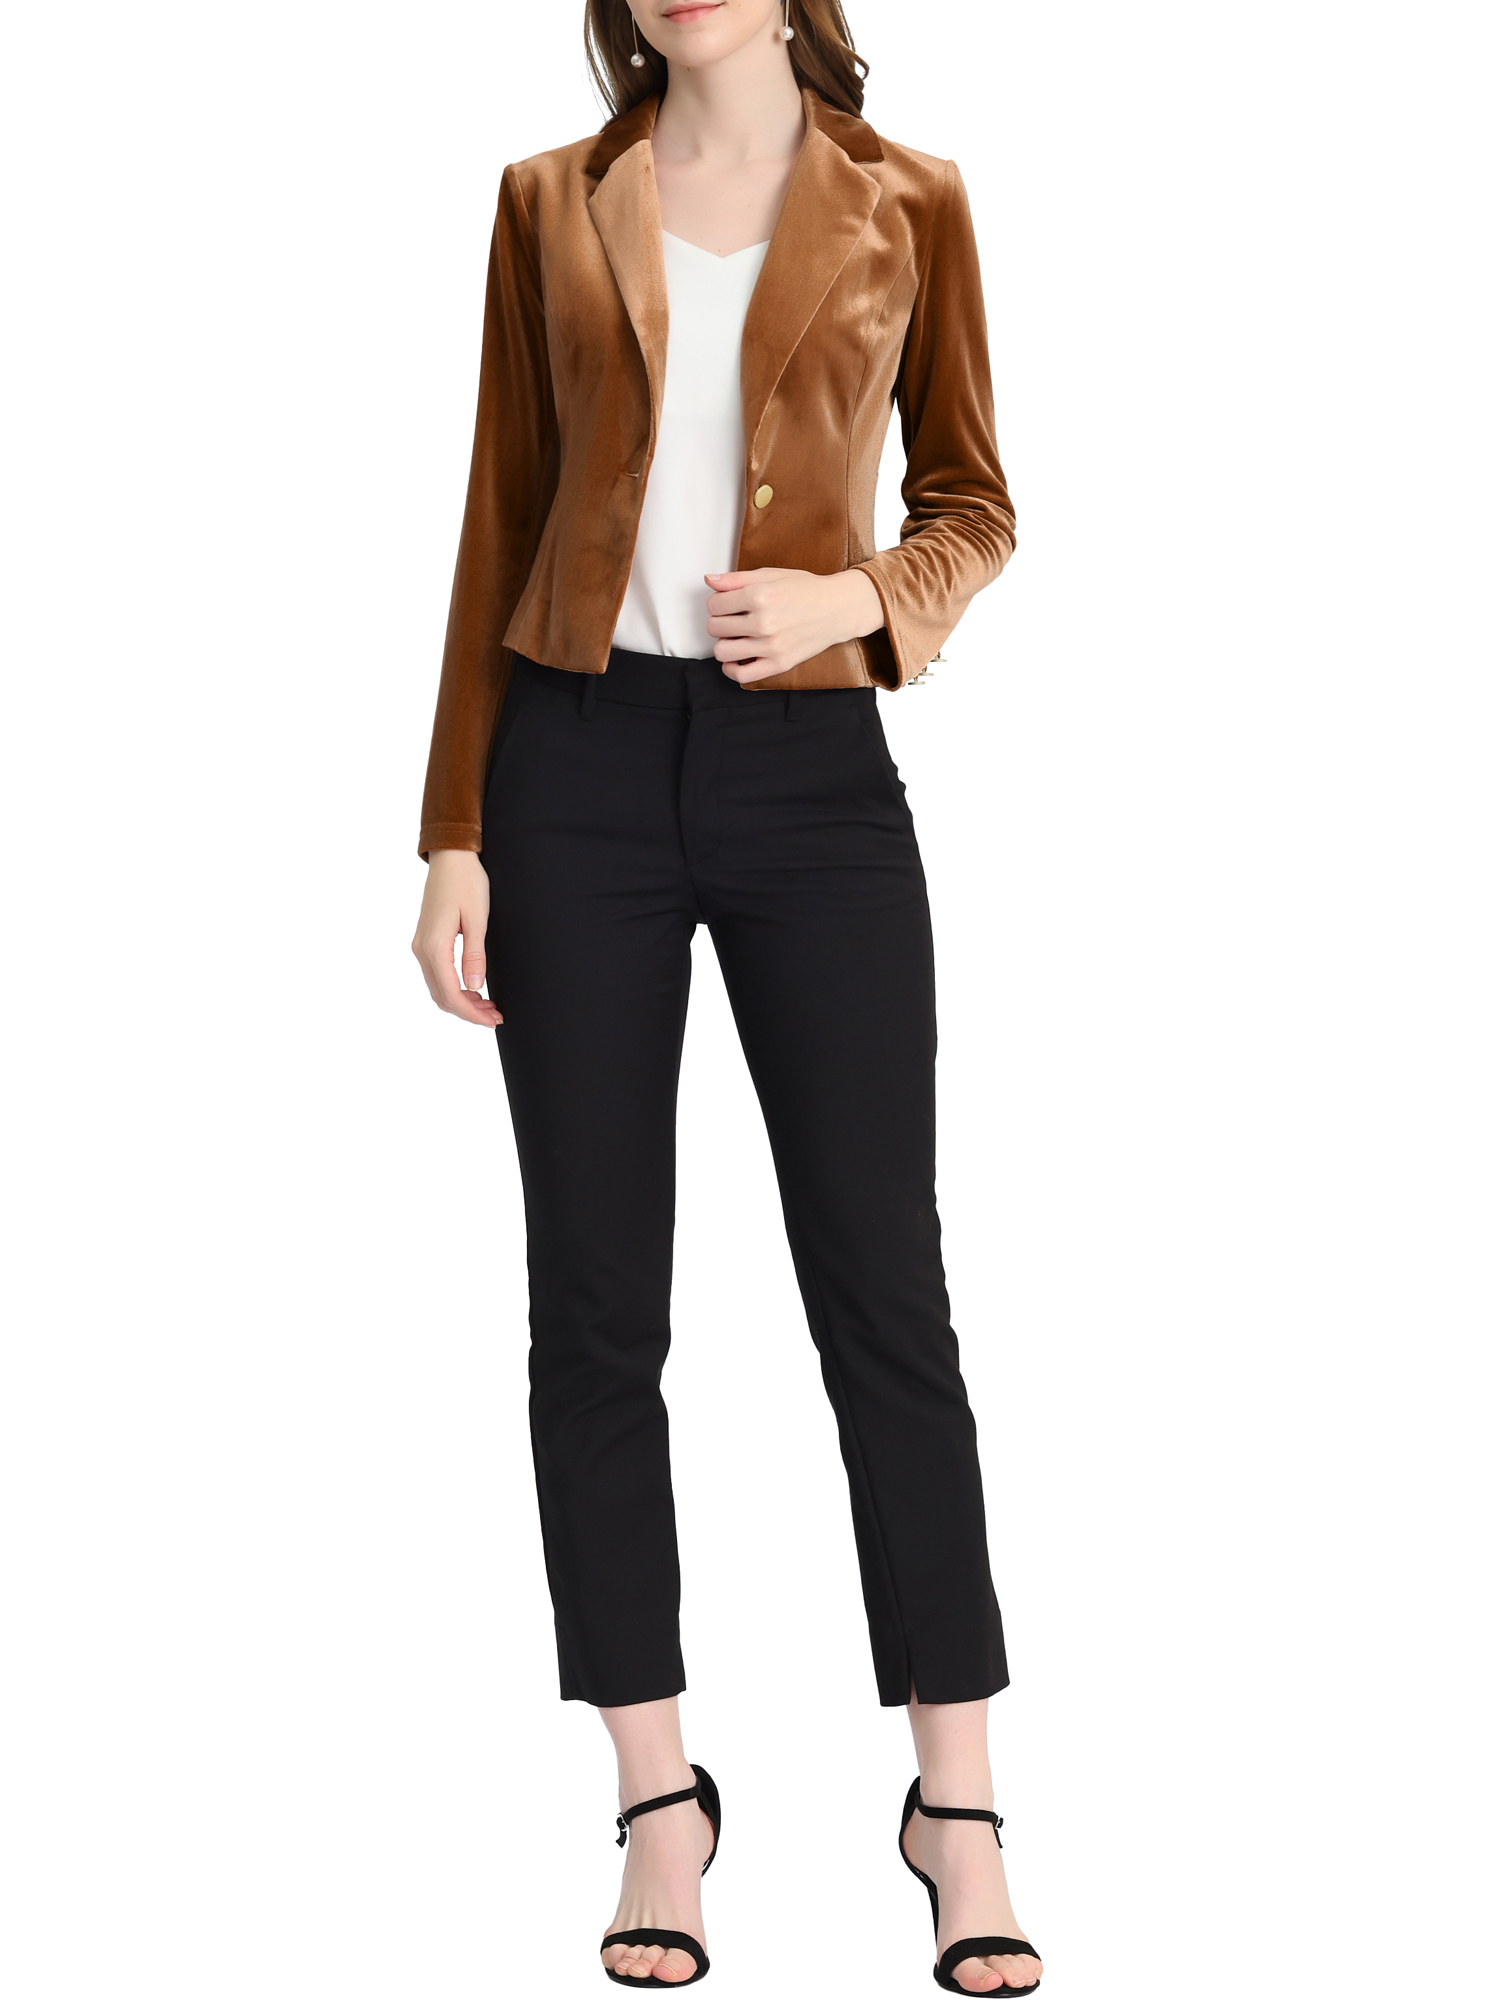 Unique Bargains Women's Button Front Velvet Blazer Lapel Office Crop Suit Jacket S Brown - image 2 of 6